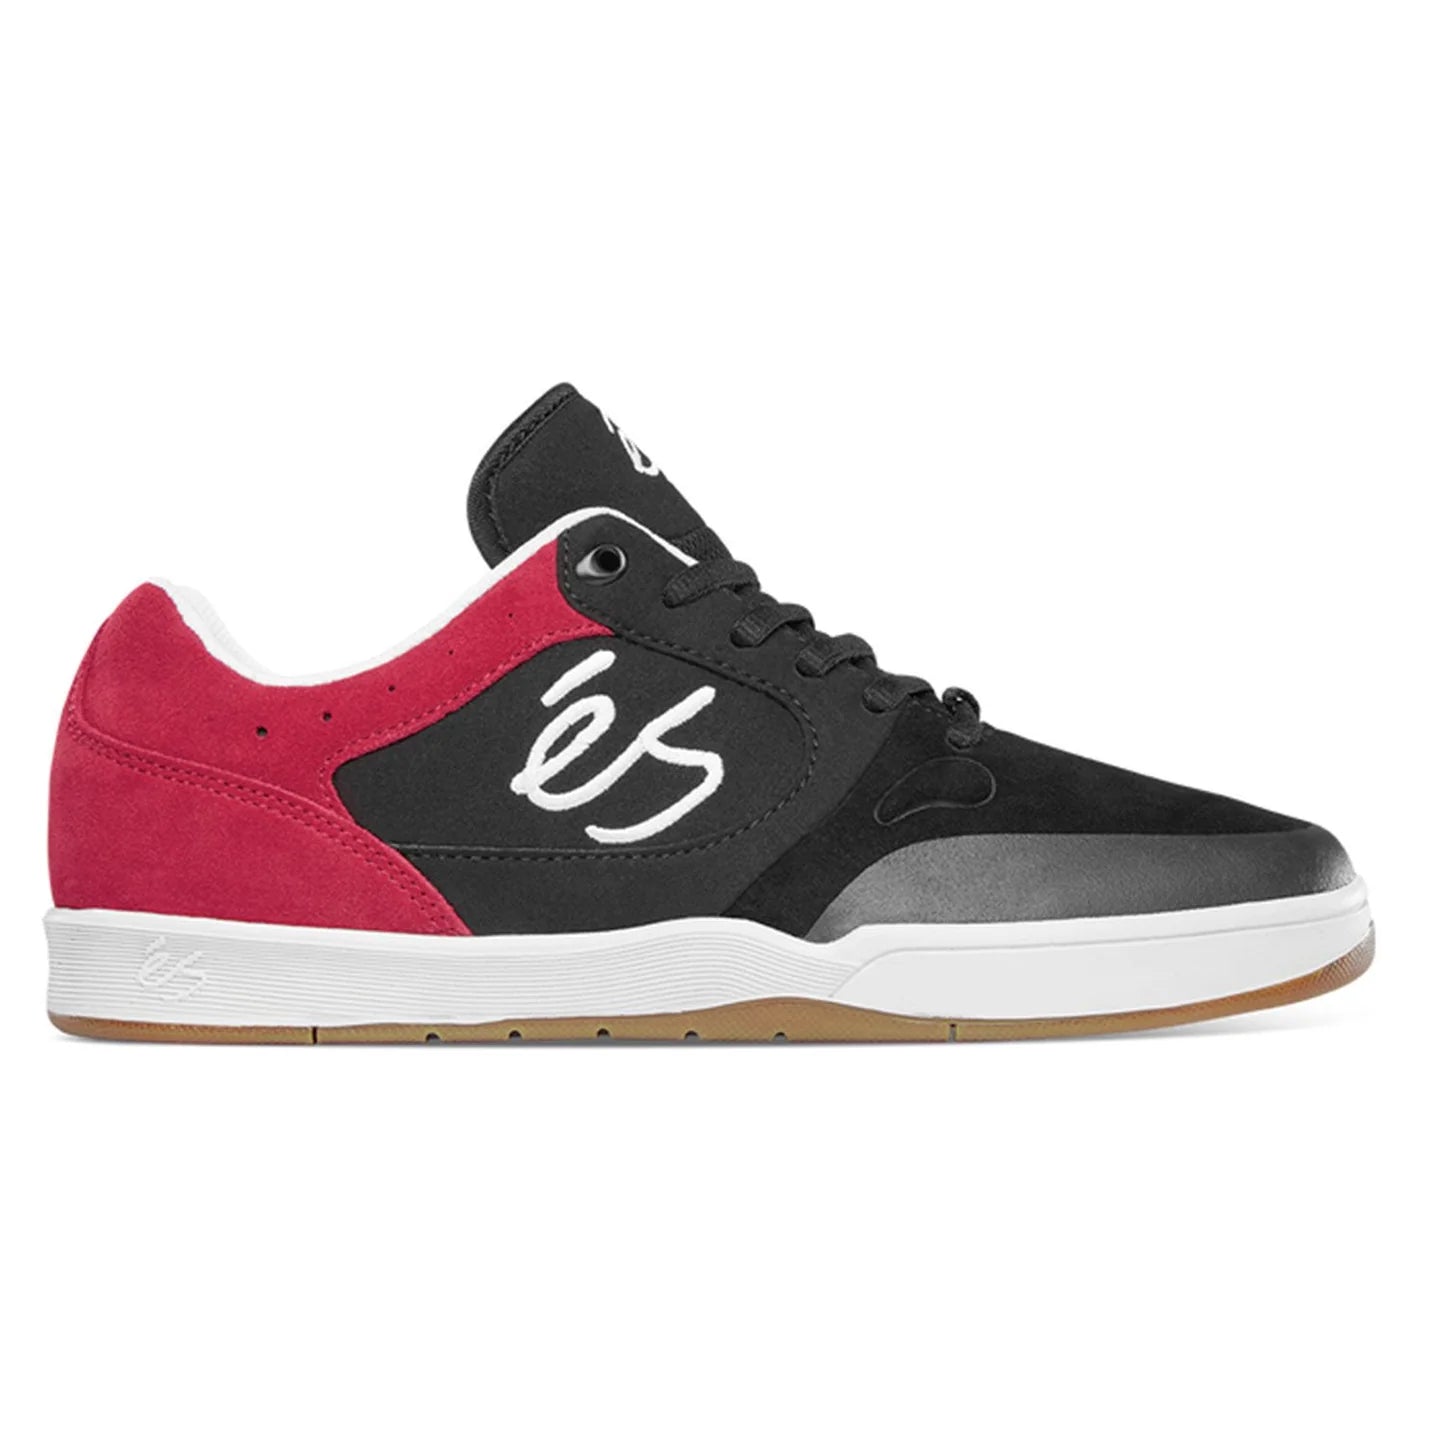 eS Skateboarding Swift 1.5 Black / Red Skate Shoes